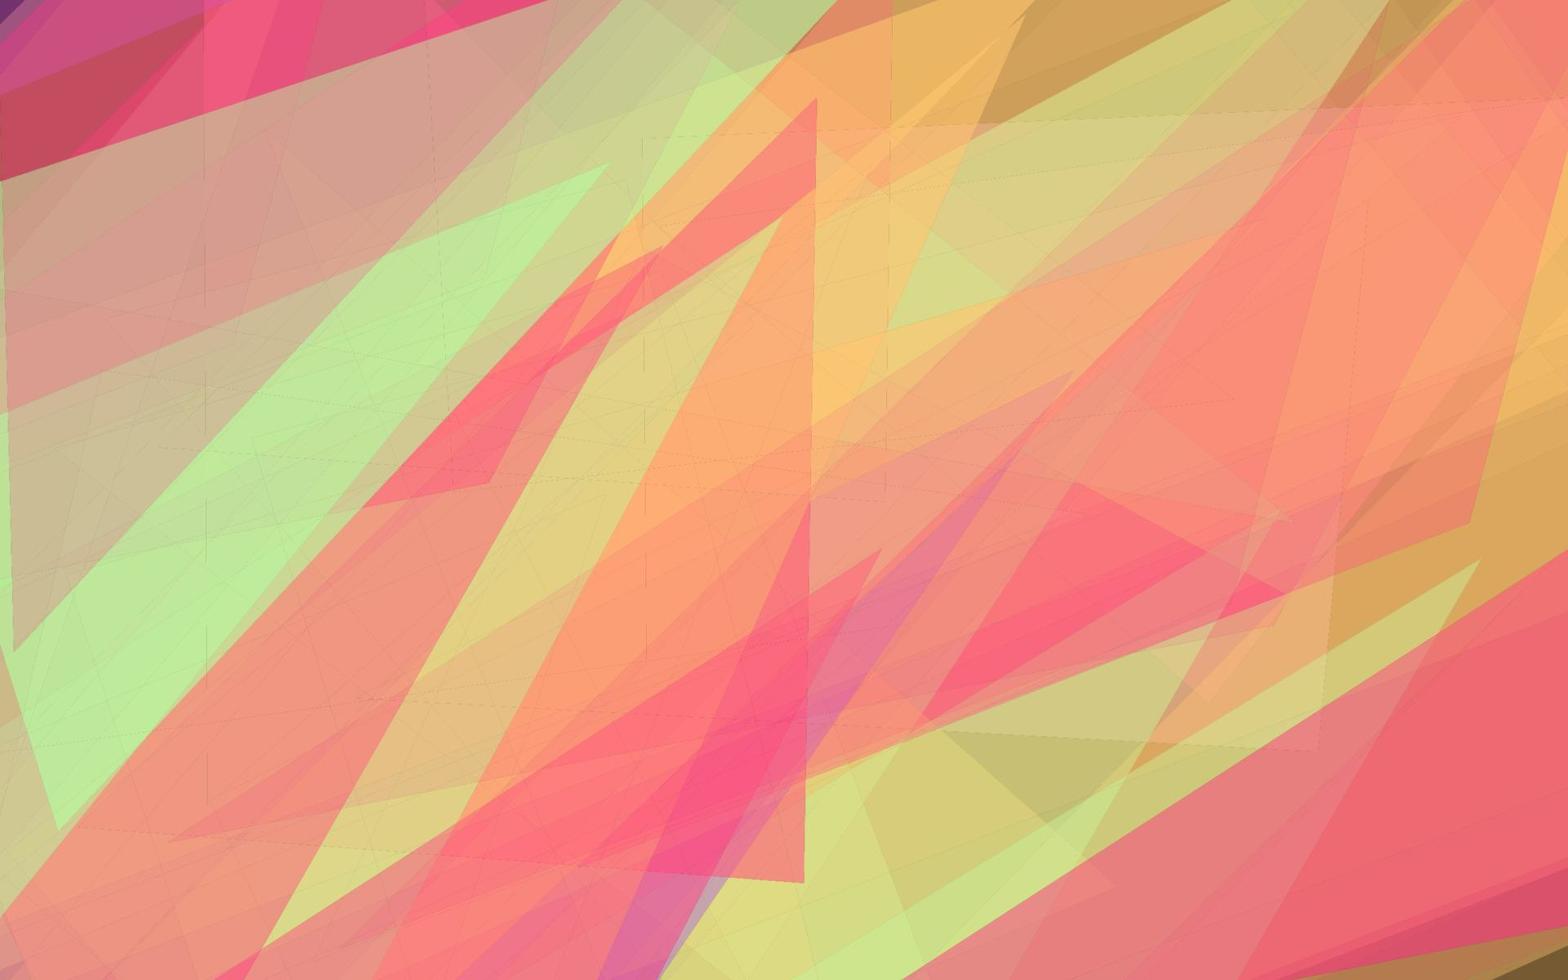 abstrakt geometrisk transparant Flerfärgad bakgrund vektor